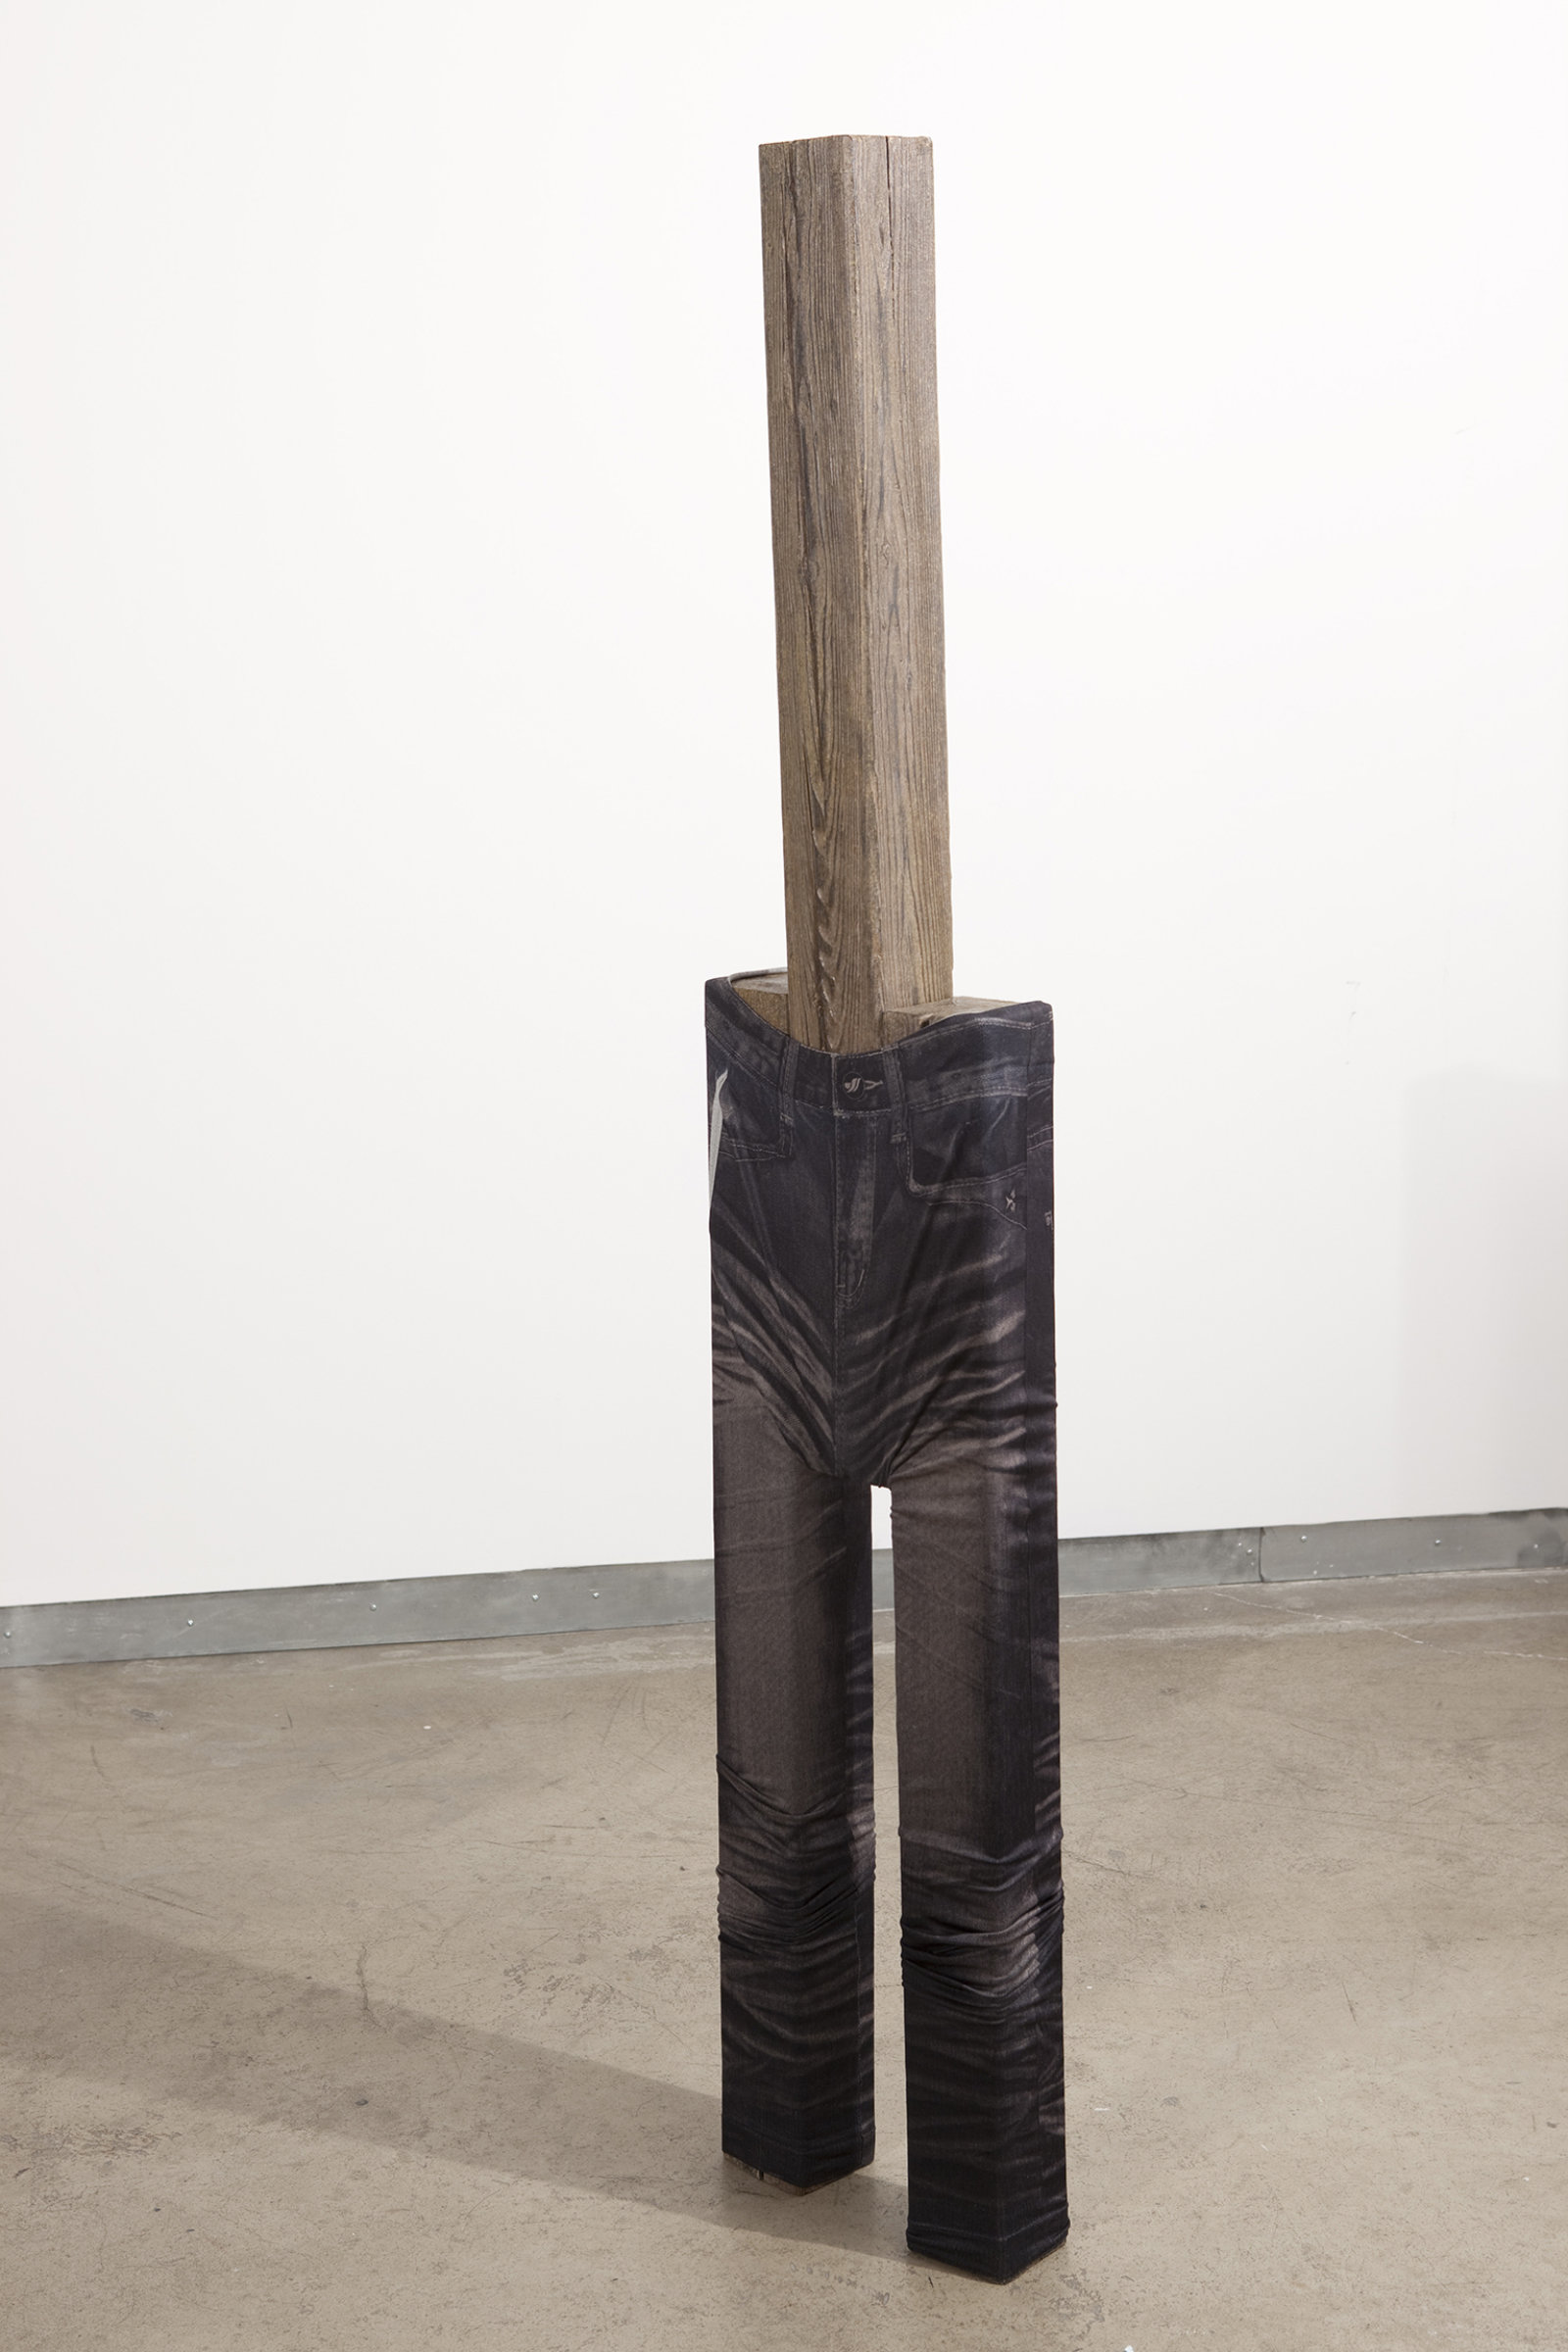 Valérie Blass, Touche du bois, 2009, wood, paint, pigment 36 x 11 x 4 in. (91 x 27 x 10 cm)